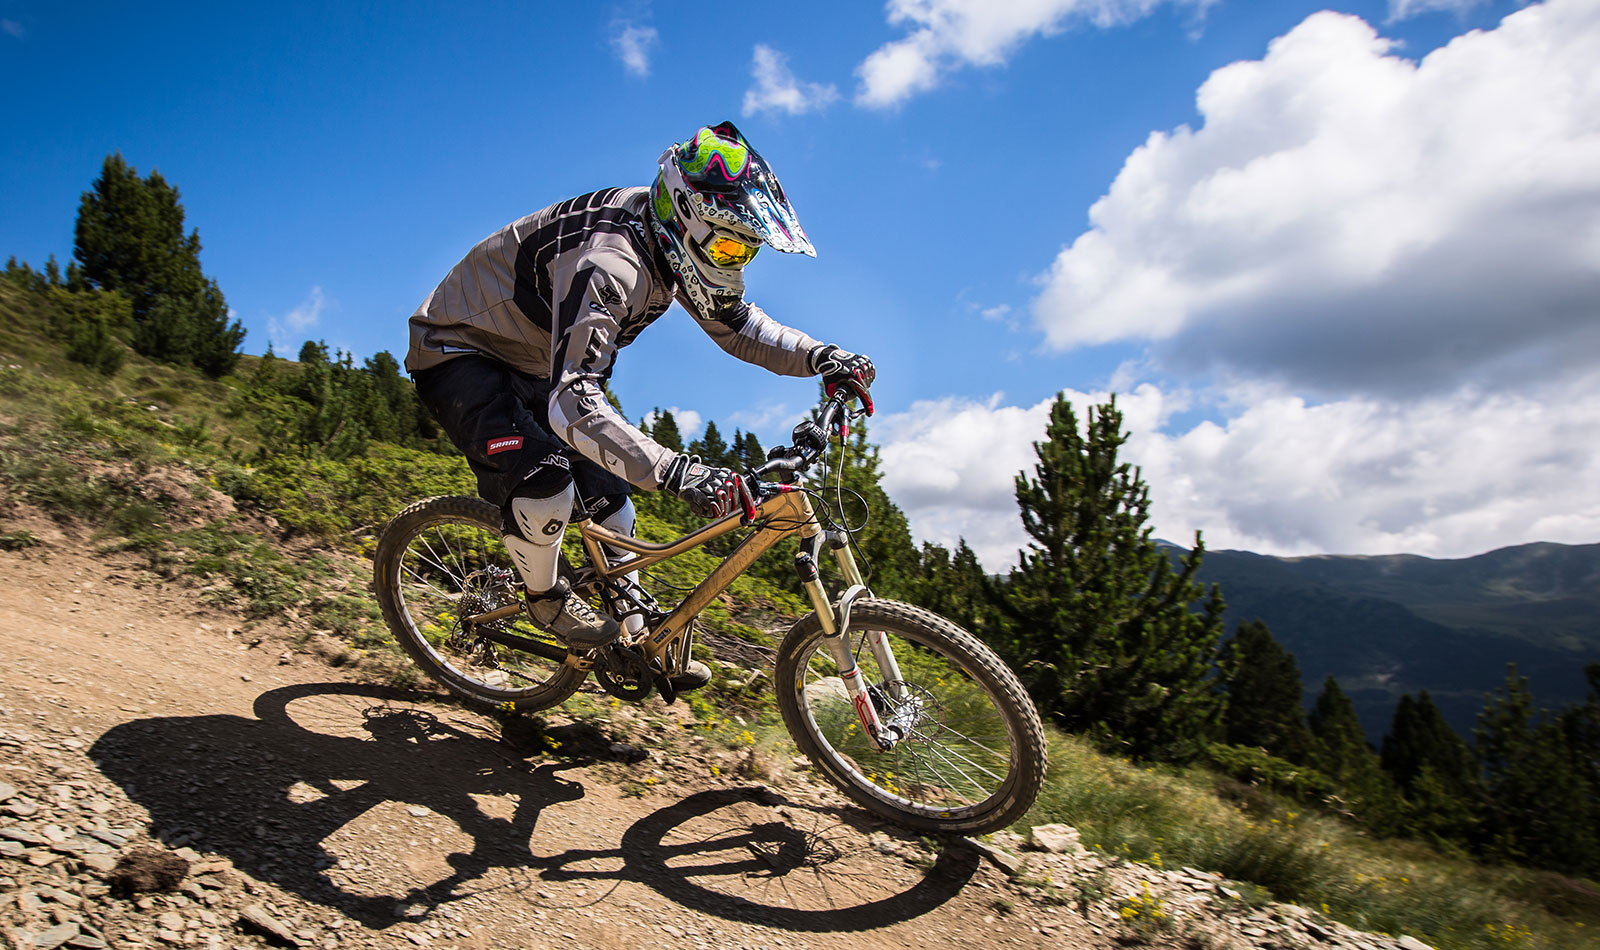 Manuel Bustelo Moutain Biking in Andorra